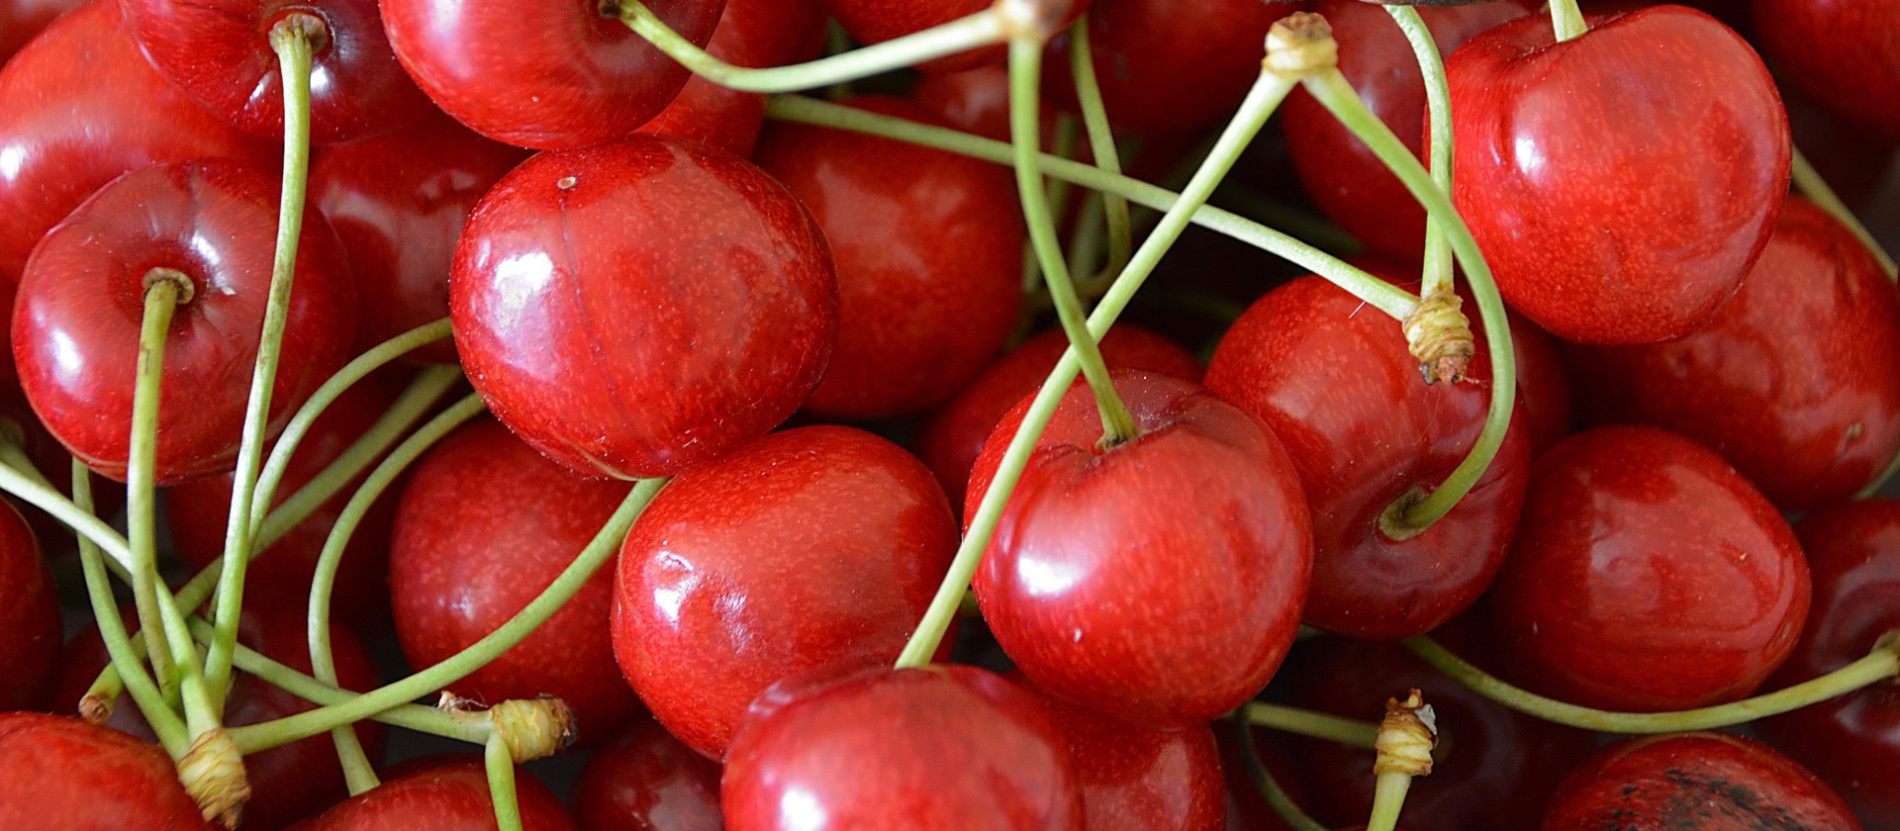 Health Benefits Of Cherries Mayo Clinic